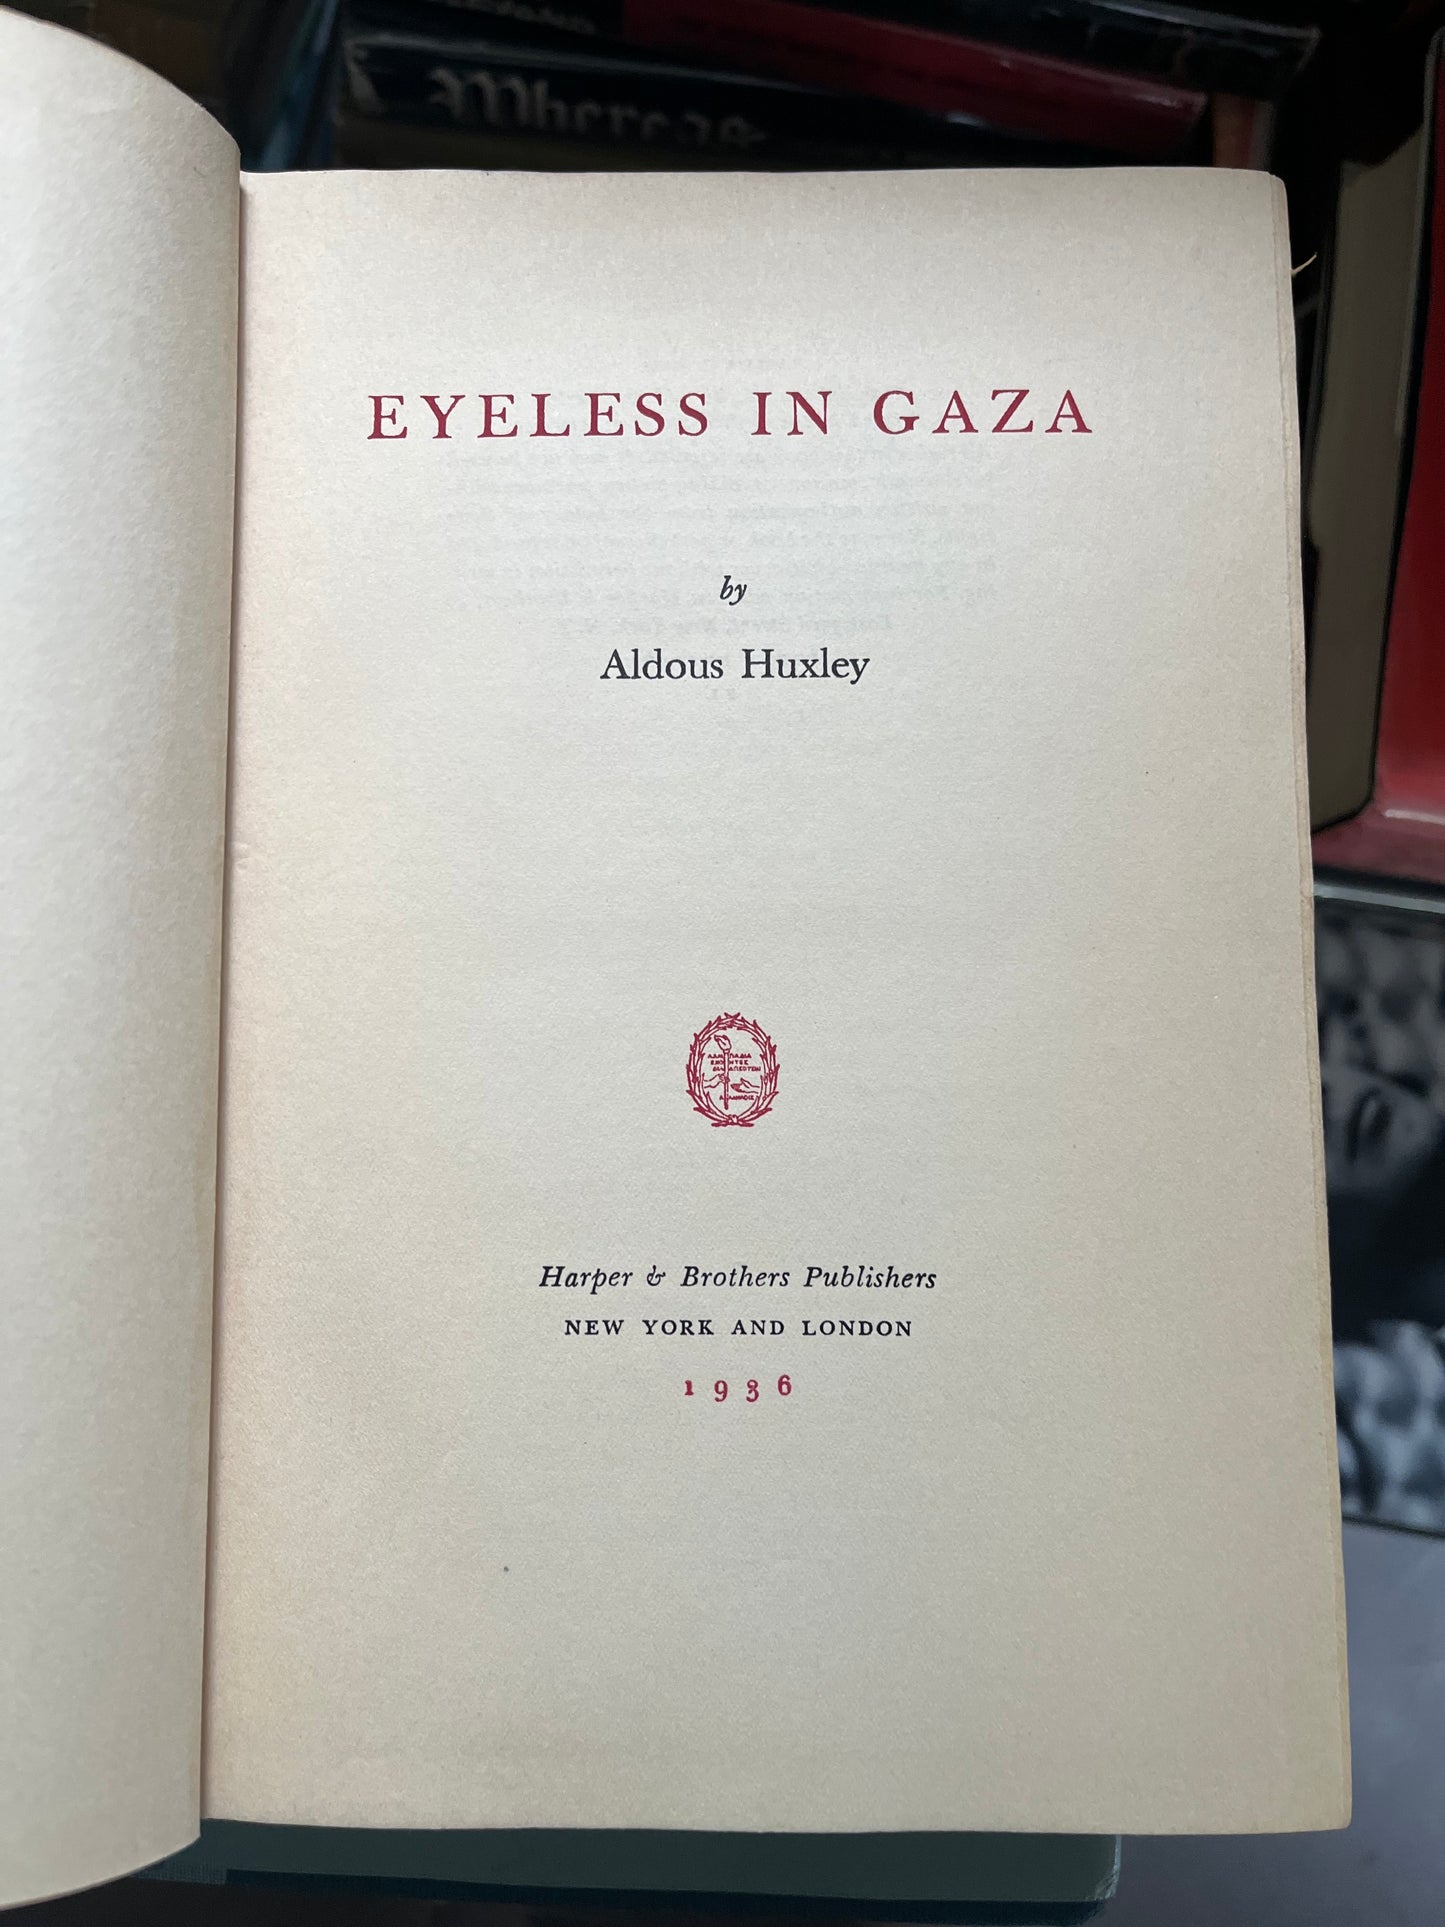 Eyeless in Gaza